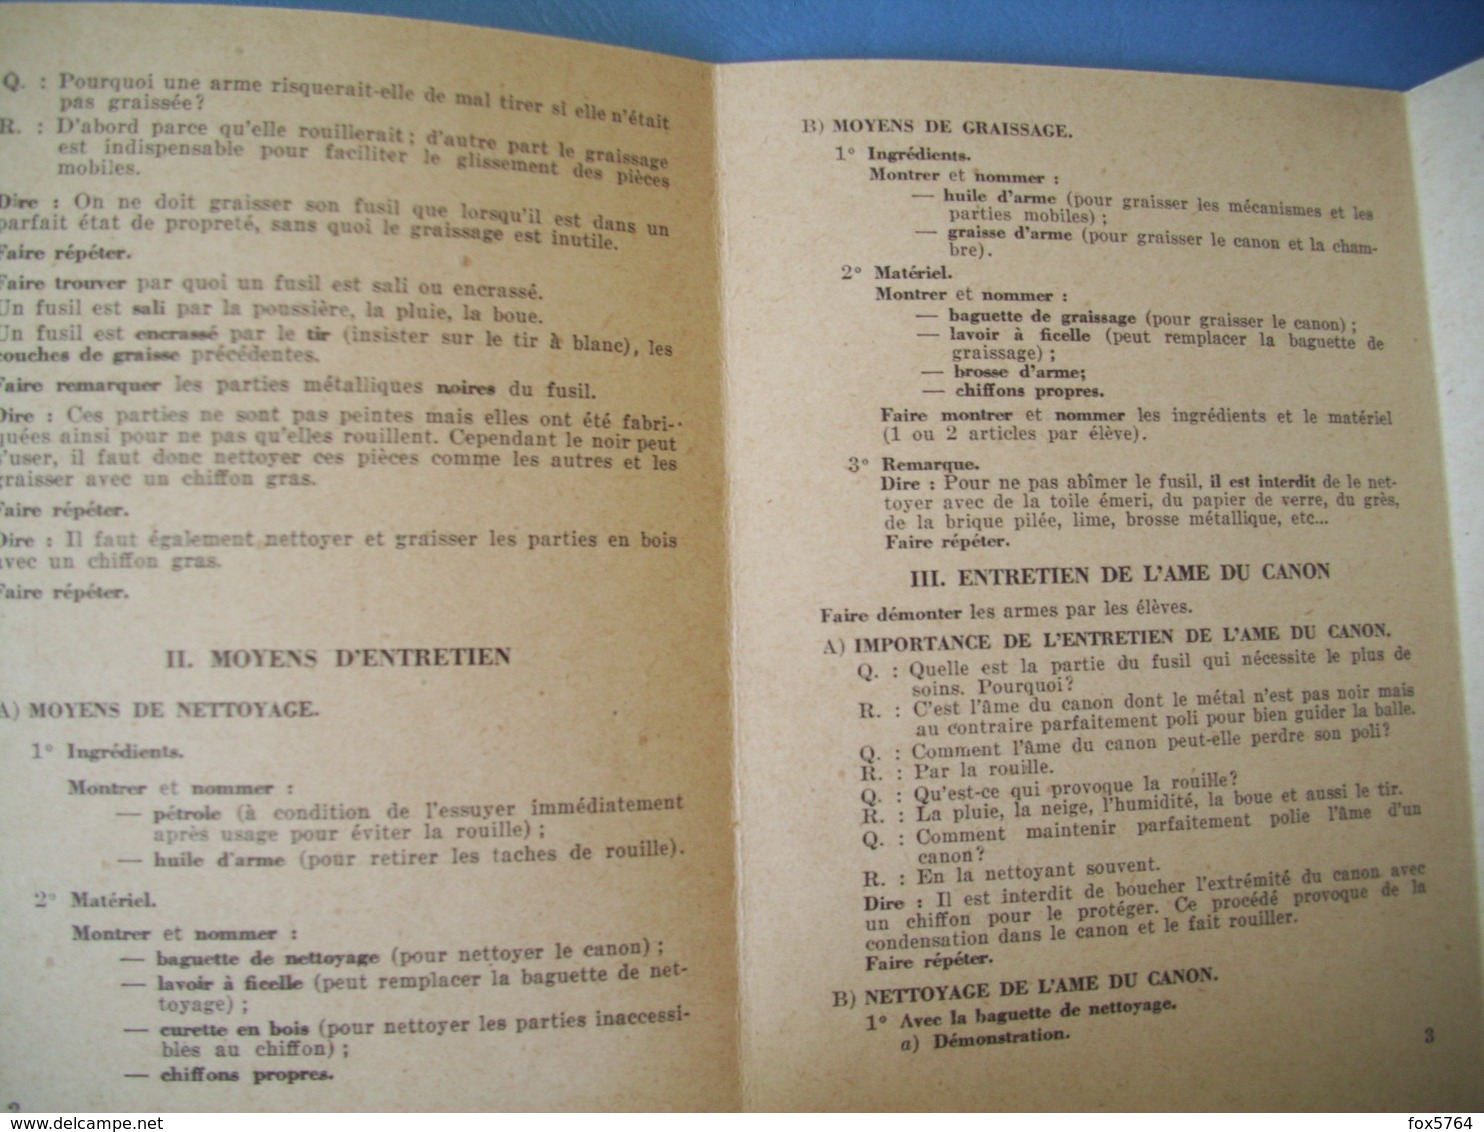 FICHE FCB / TTA 140 / FUSIL GARANT US M1 / ENTRETIEN DE L'ARME / 1956 - France